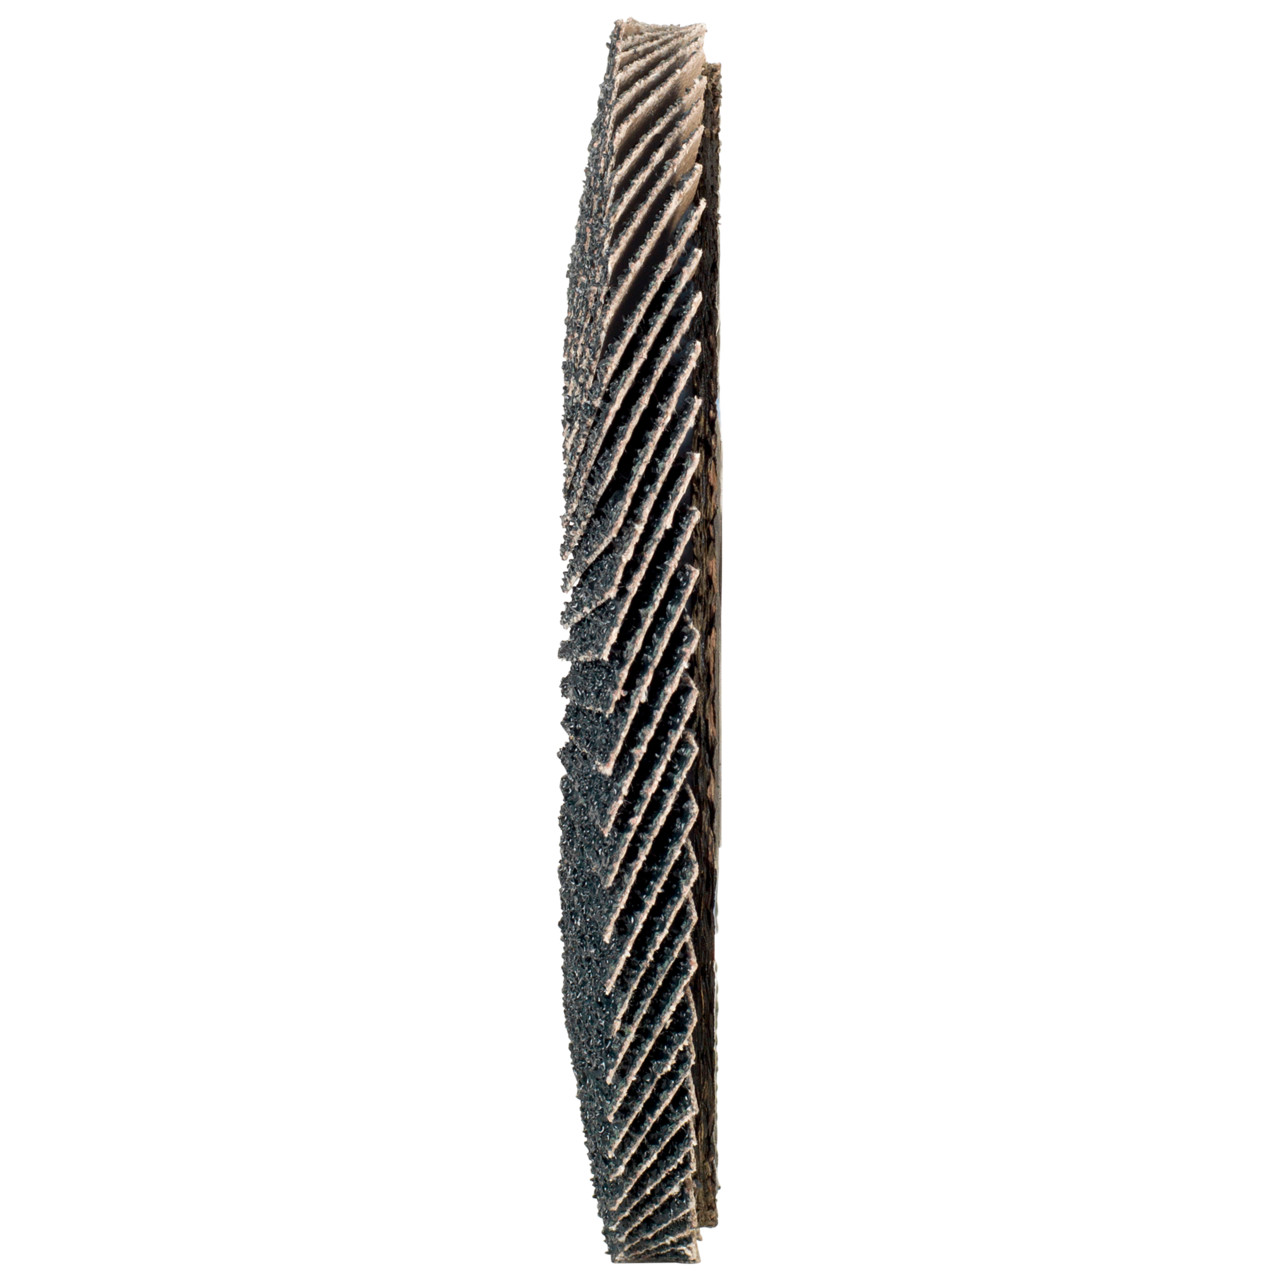 TYROLIT Fächerscheibe DxH 150x22,2 2in1 für Stahl & Edelstahl, P60, Form: 27A - gekröpfte Ausführung (Glasfaserträgerkörperausführung), Art. 519213